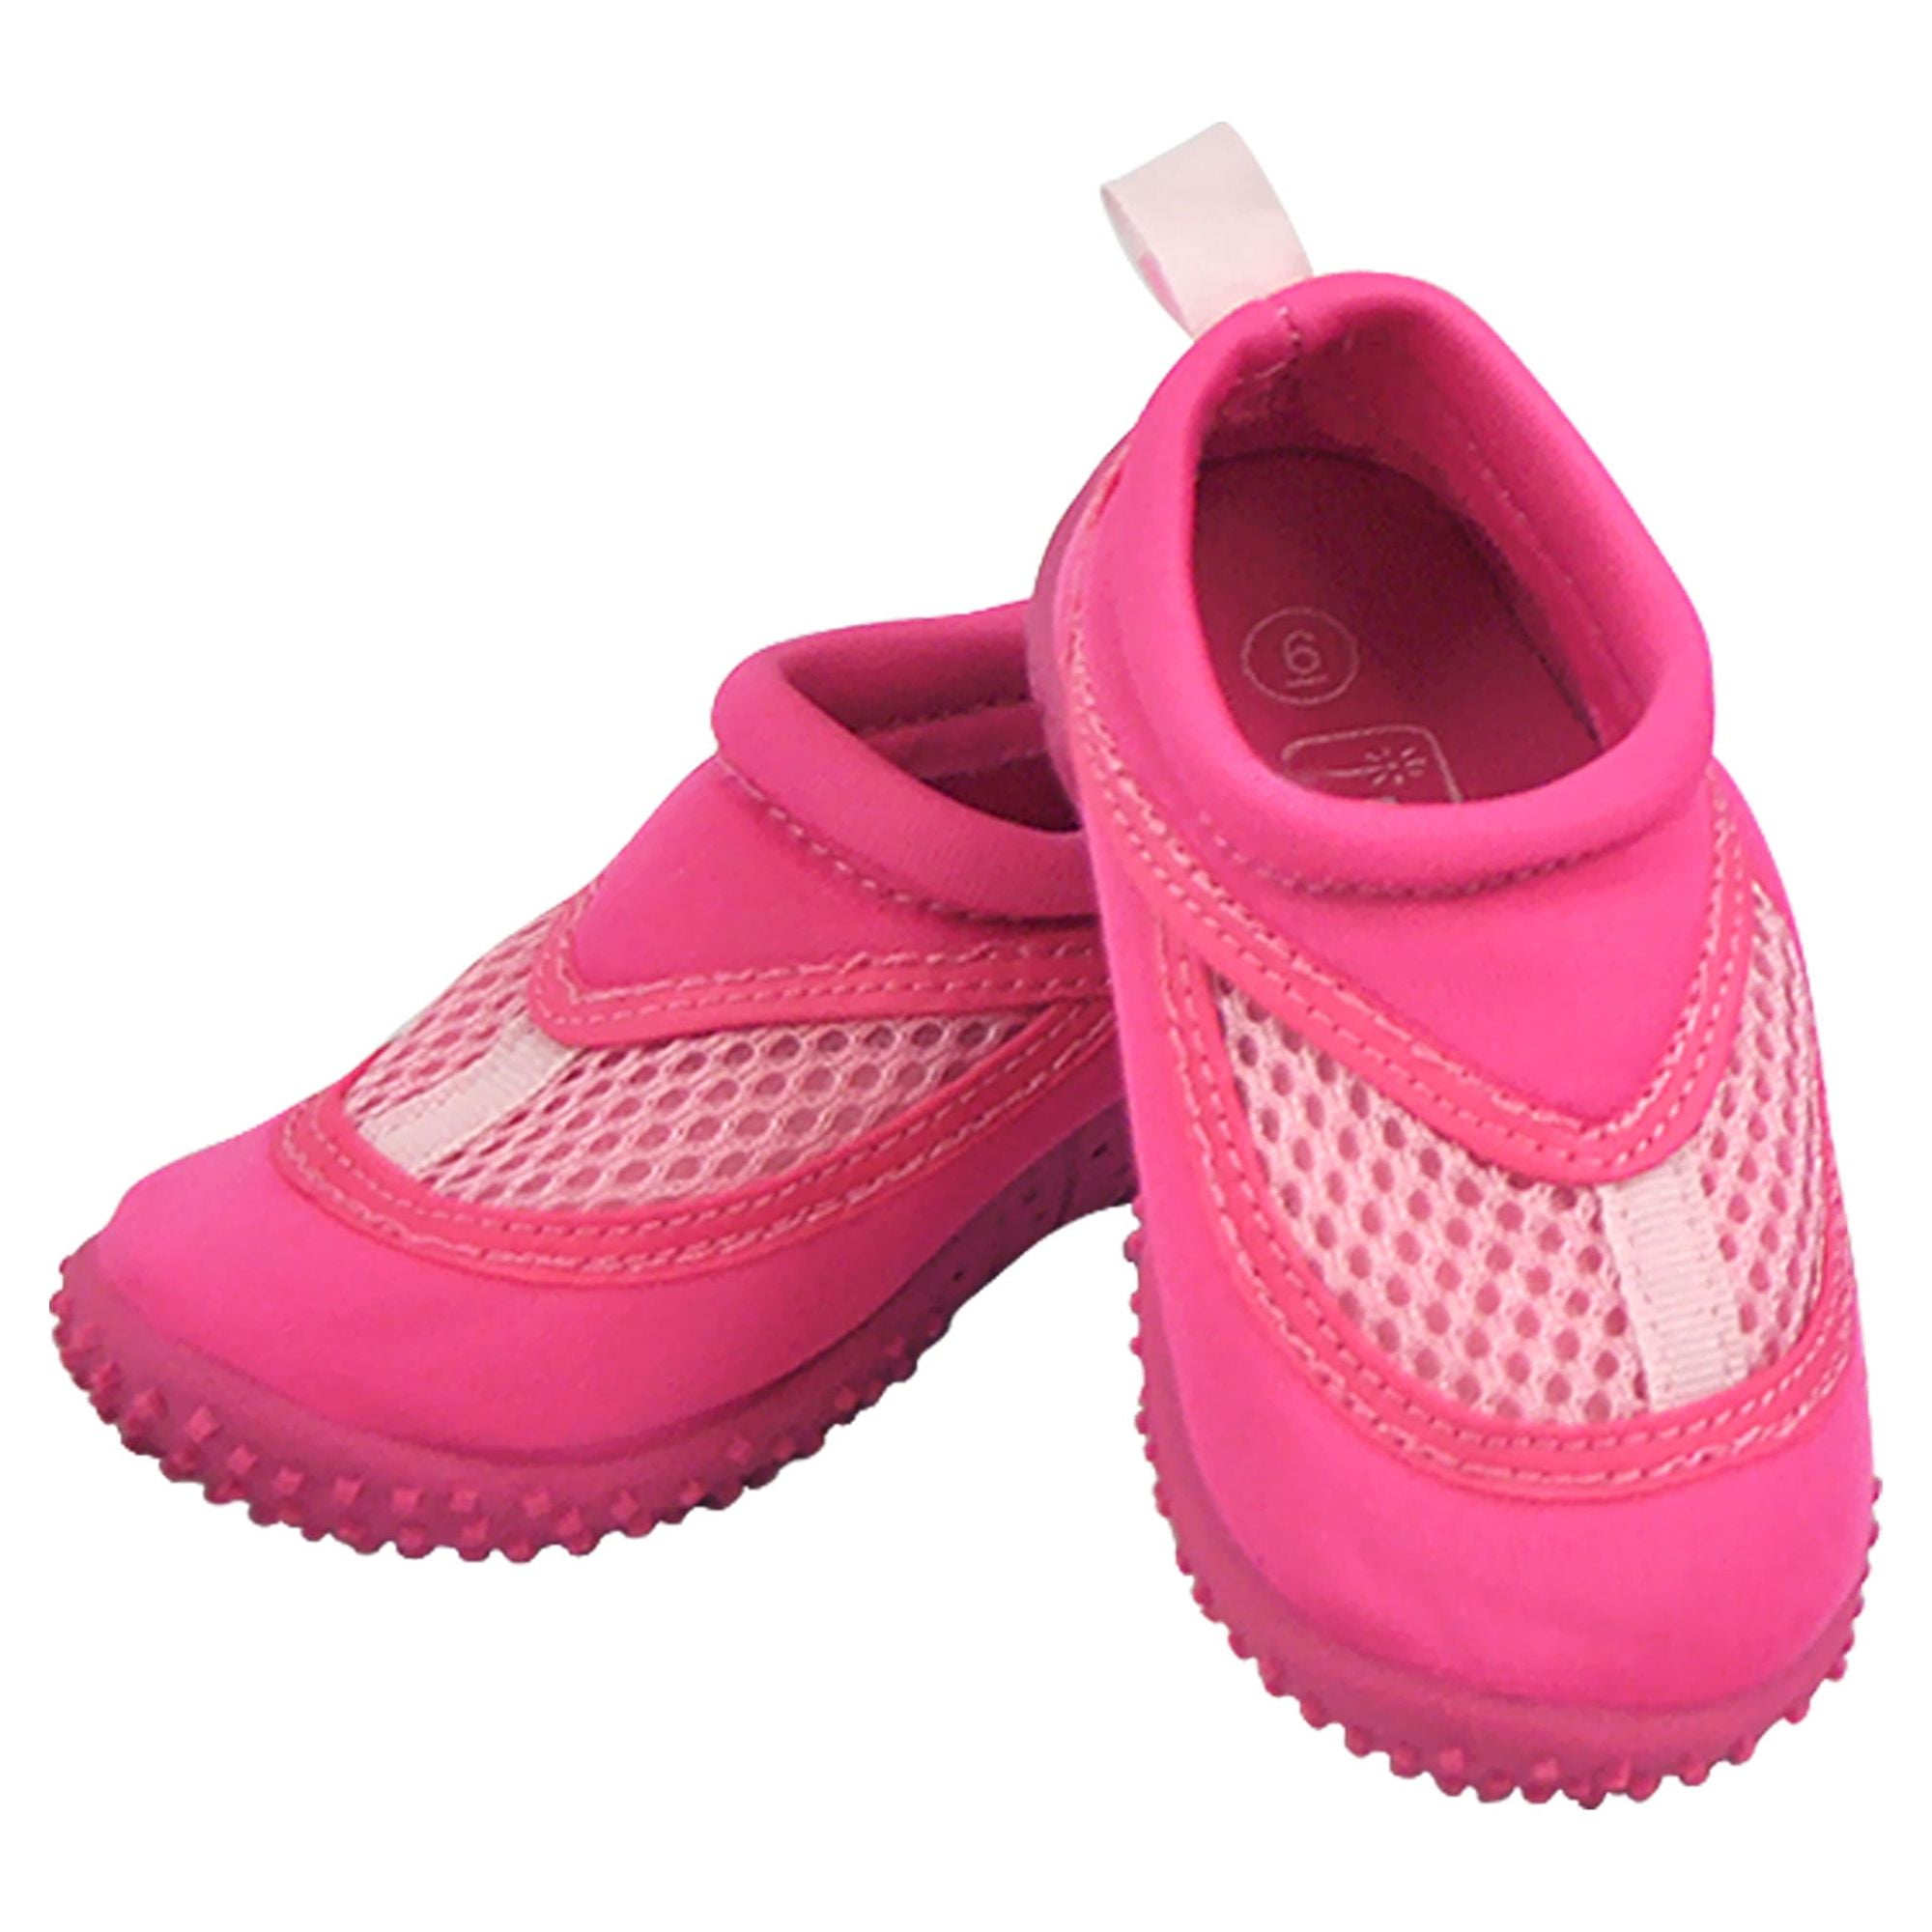 Playshoes Unisex-Child 174797 Zapatos de Agua